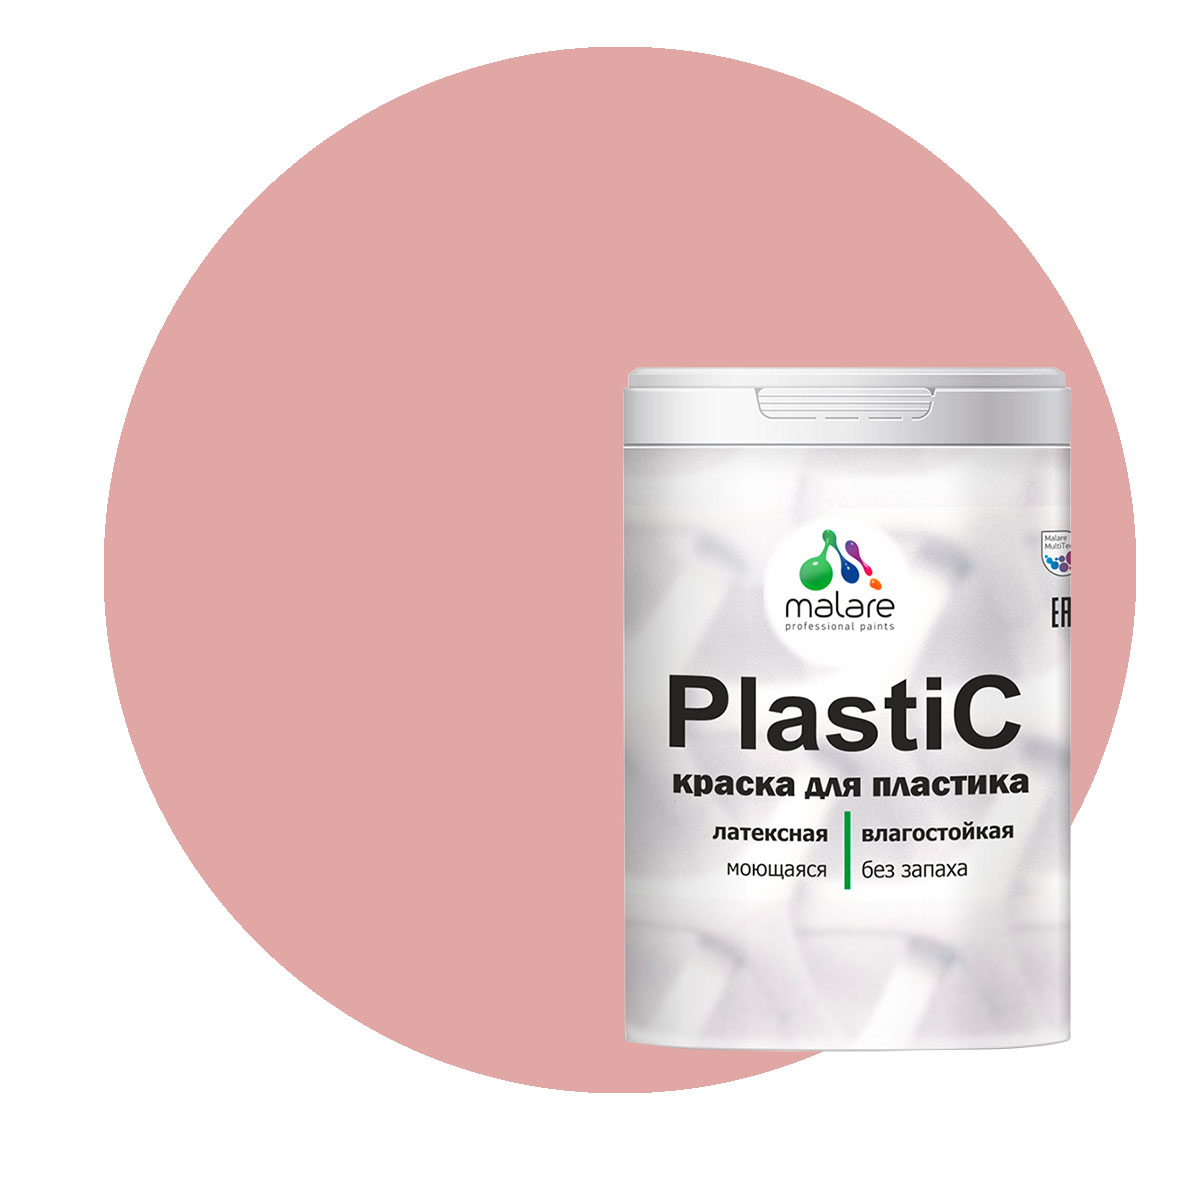 Краска Malare PlastiC для пластика, ПВХ, для сайдинга, розовый пион 1 кг. краска malare plastic для пластика пвх для сайдинга розовый пион 10 кг